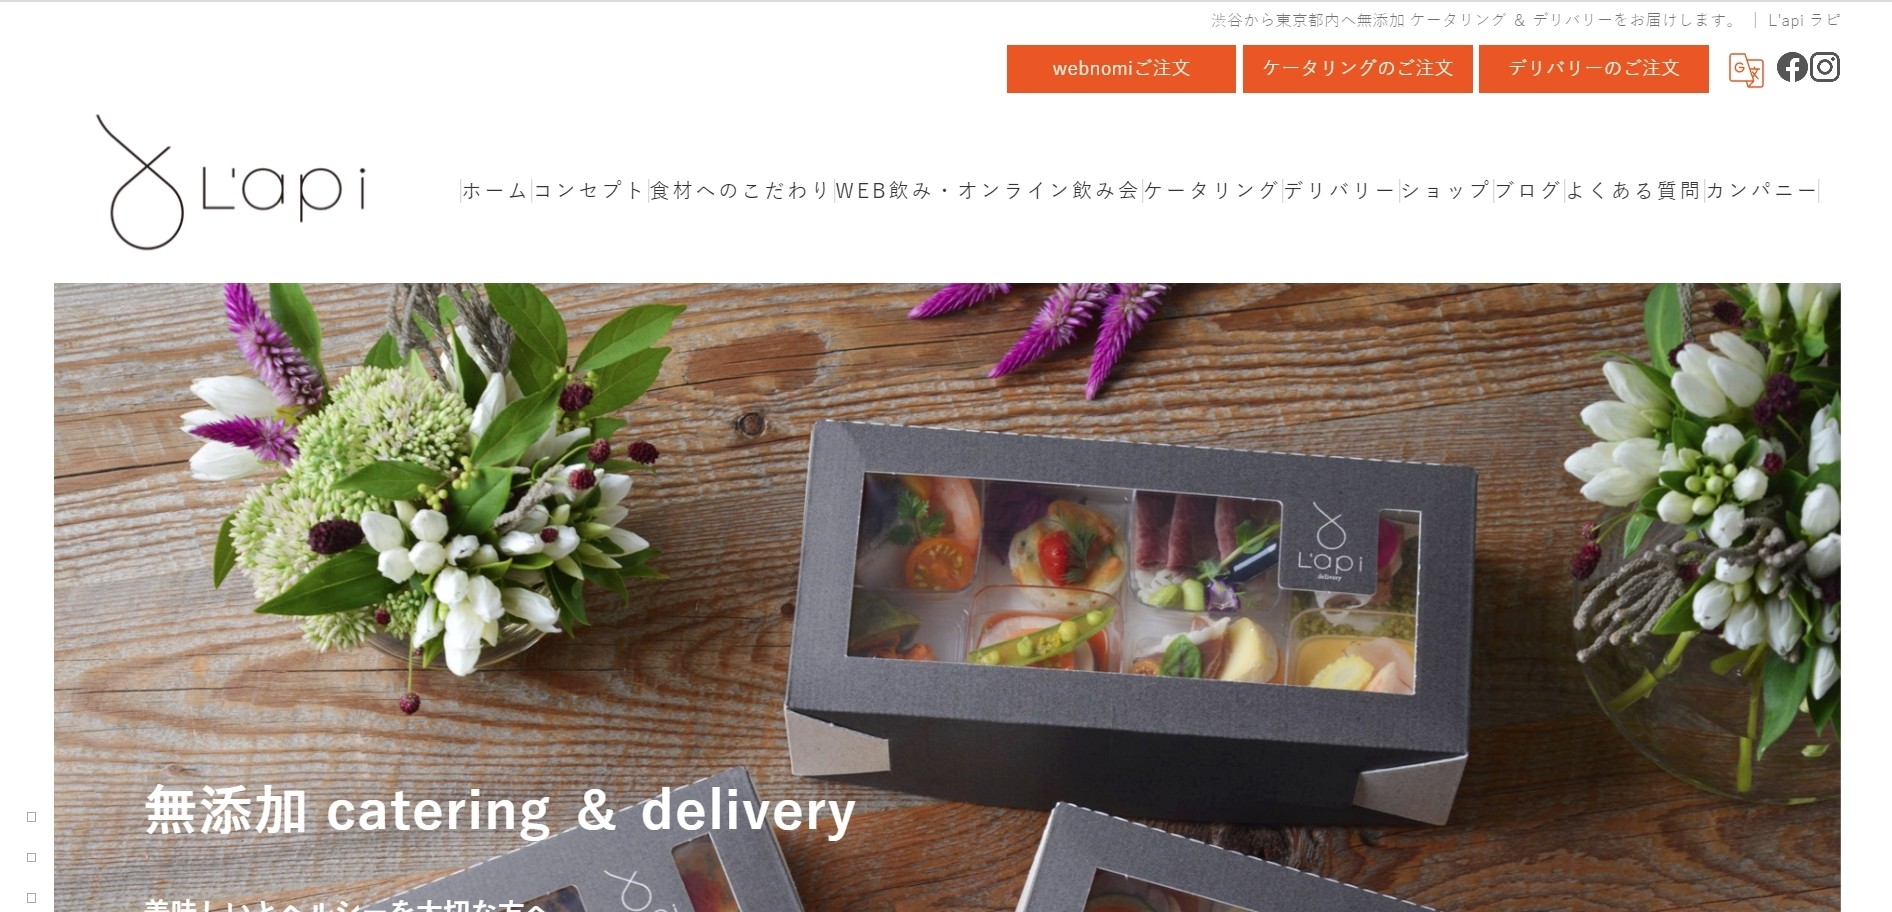 株式会社ラピコーポレーションのL'api catering ＆ deliveryサービス